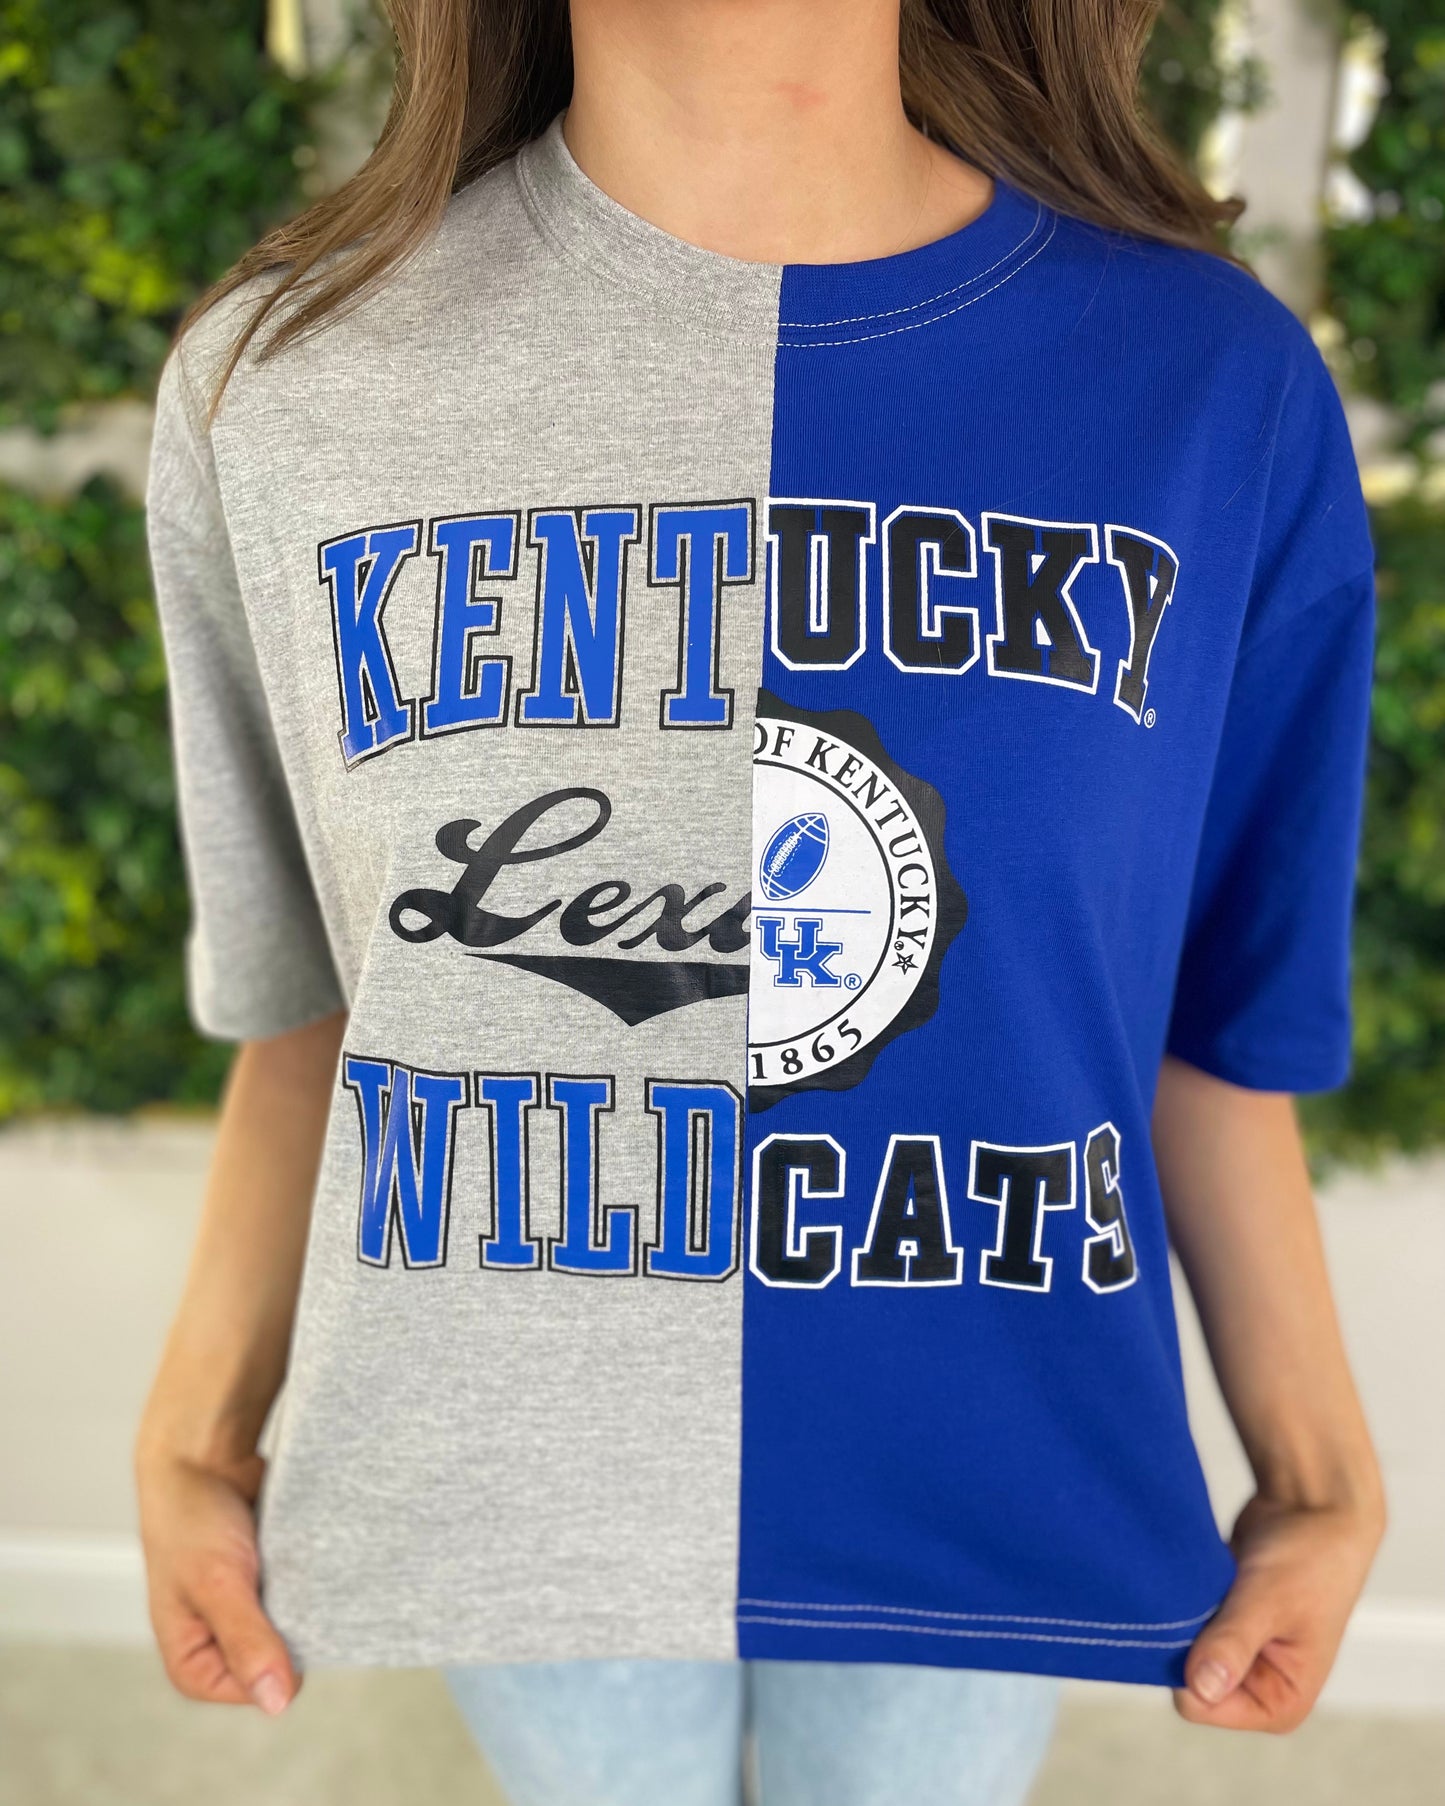 Kentucky "Half & Half" Tee